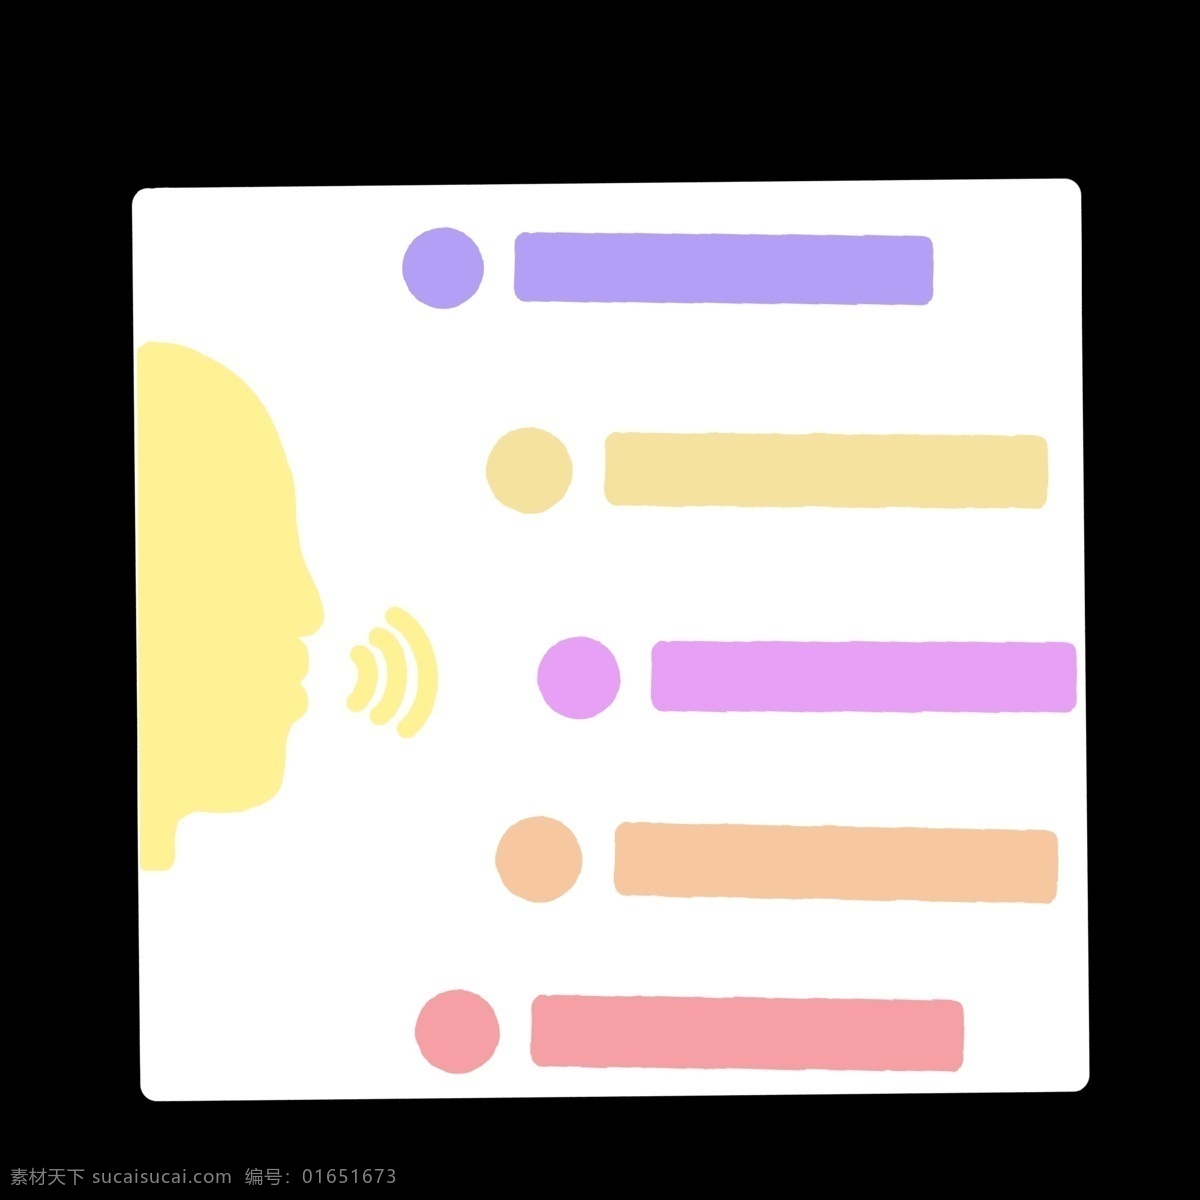 人物 语音 样式 分类 图标 说话 分类表 分解 分化 分开 ppt专用 卡通 简约 简洁 简单 五颜六色